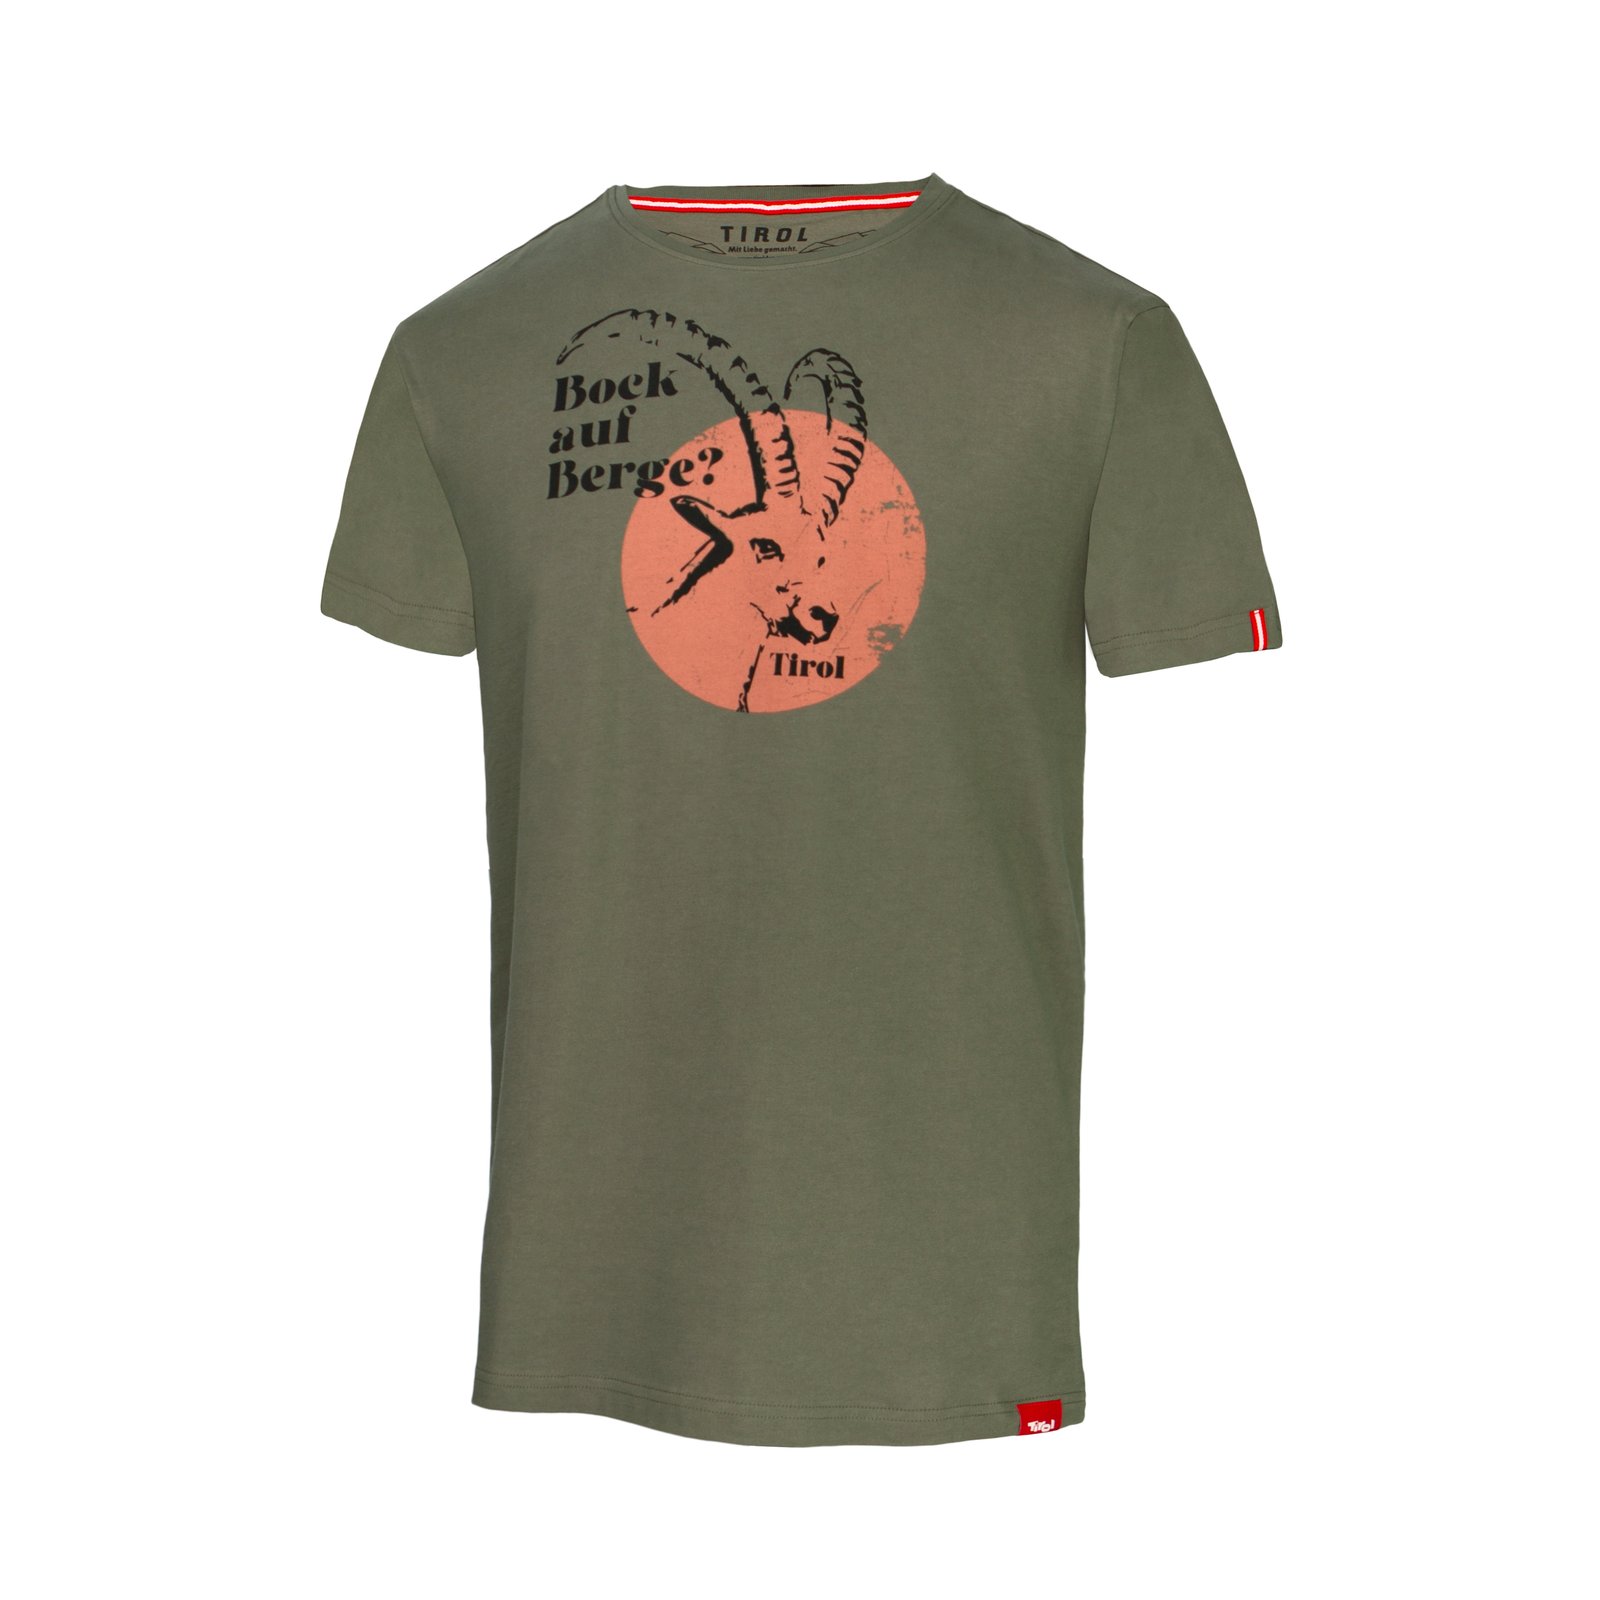 Herren T-Shirt "Bock auf Berge" oliv